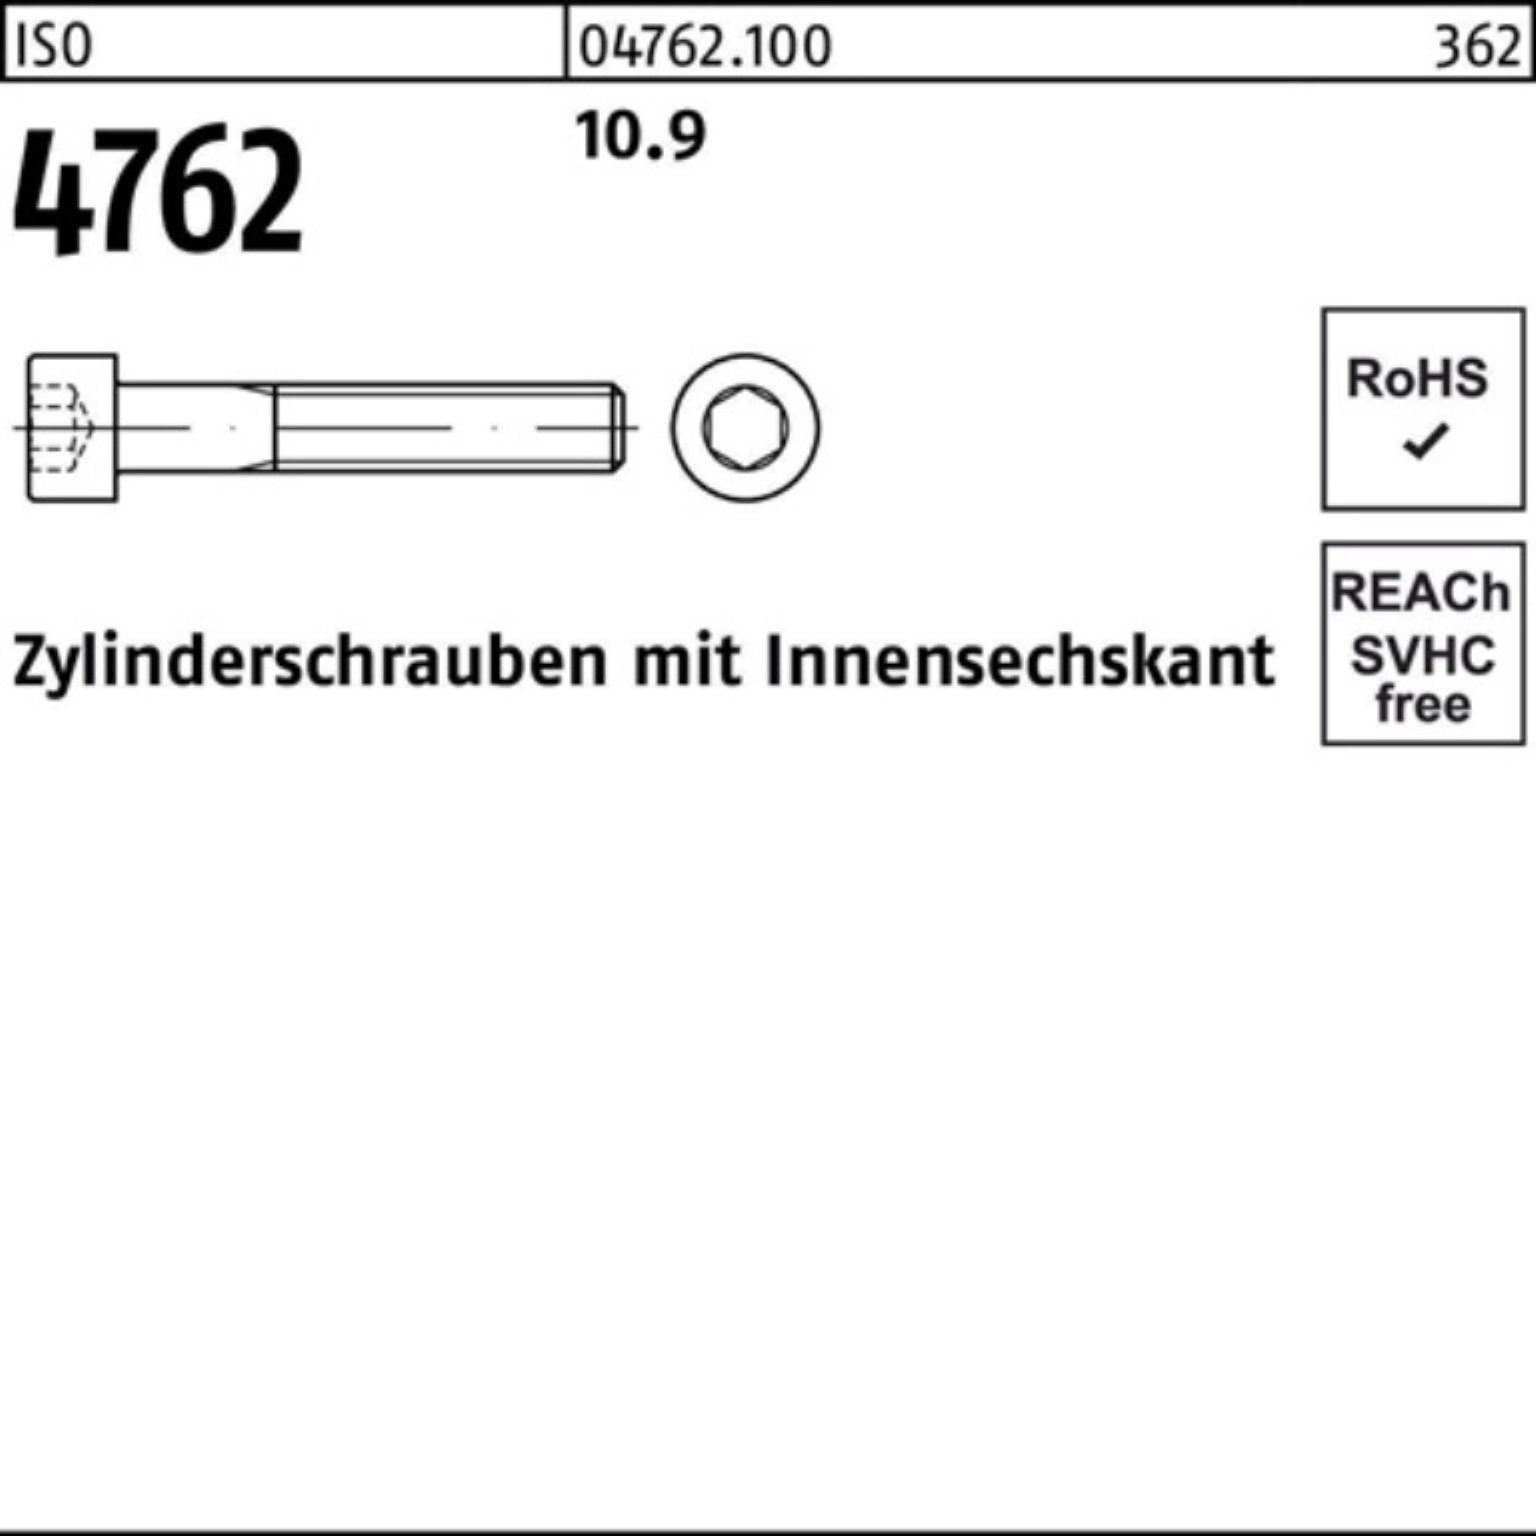 Reyher Zylinderschraube Zylinderschraube Innen-6kt 4762 Stück 100er 10.9 ISO Pack 50 95 M12x